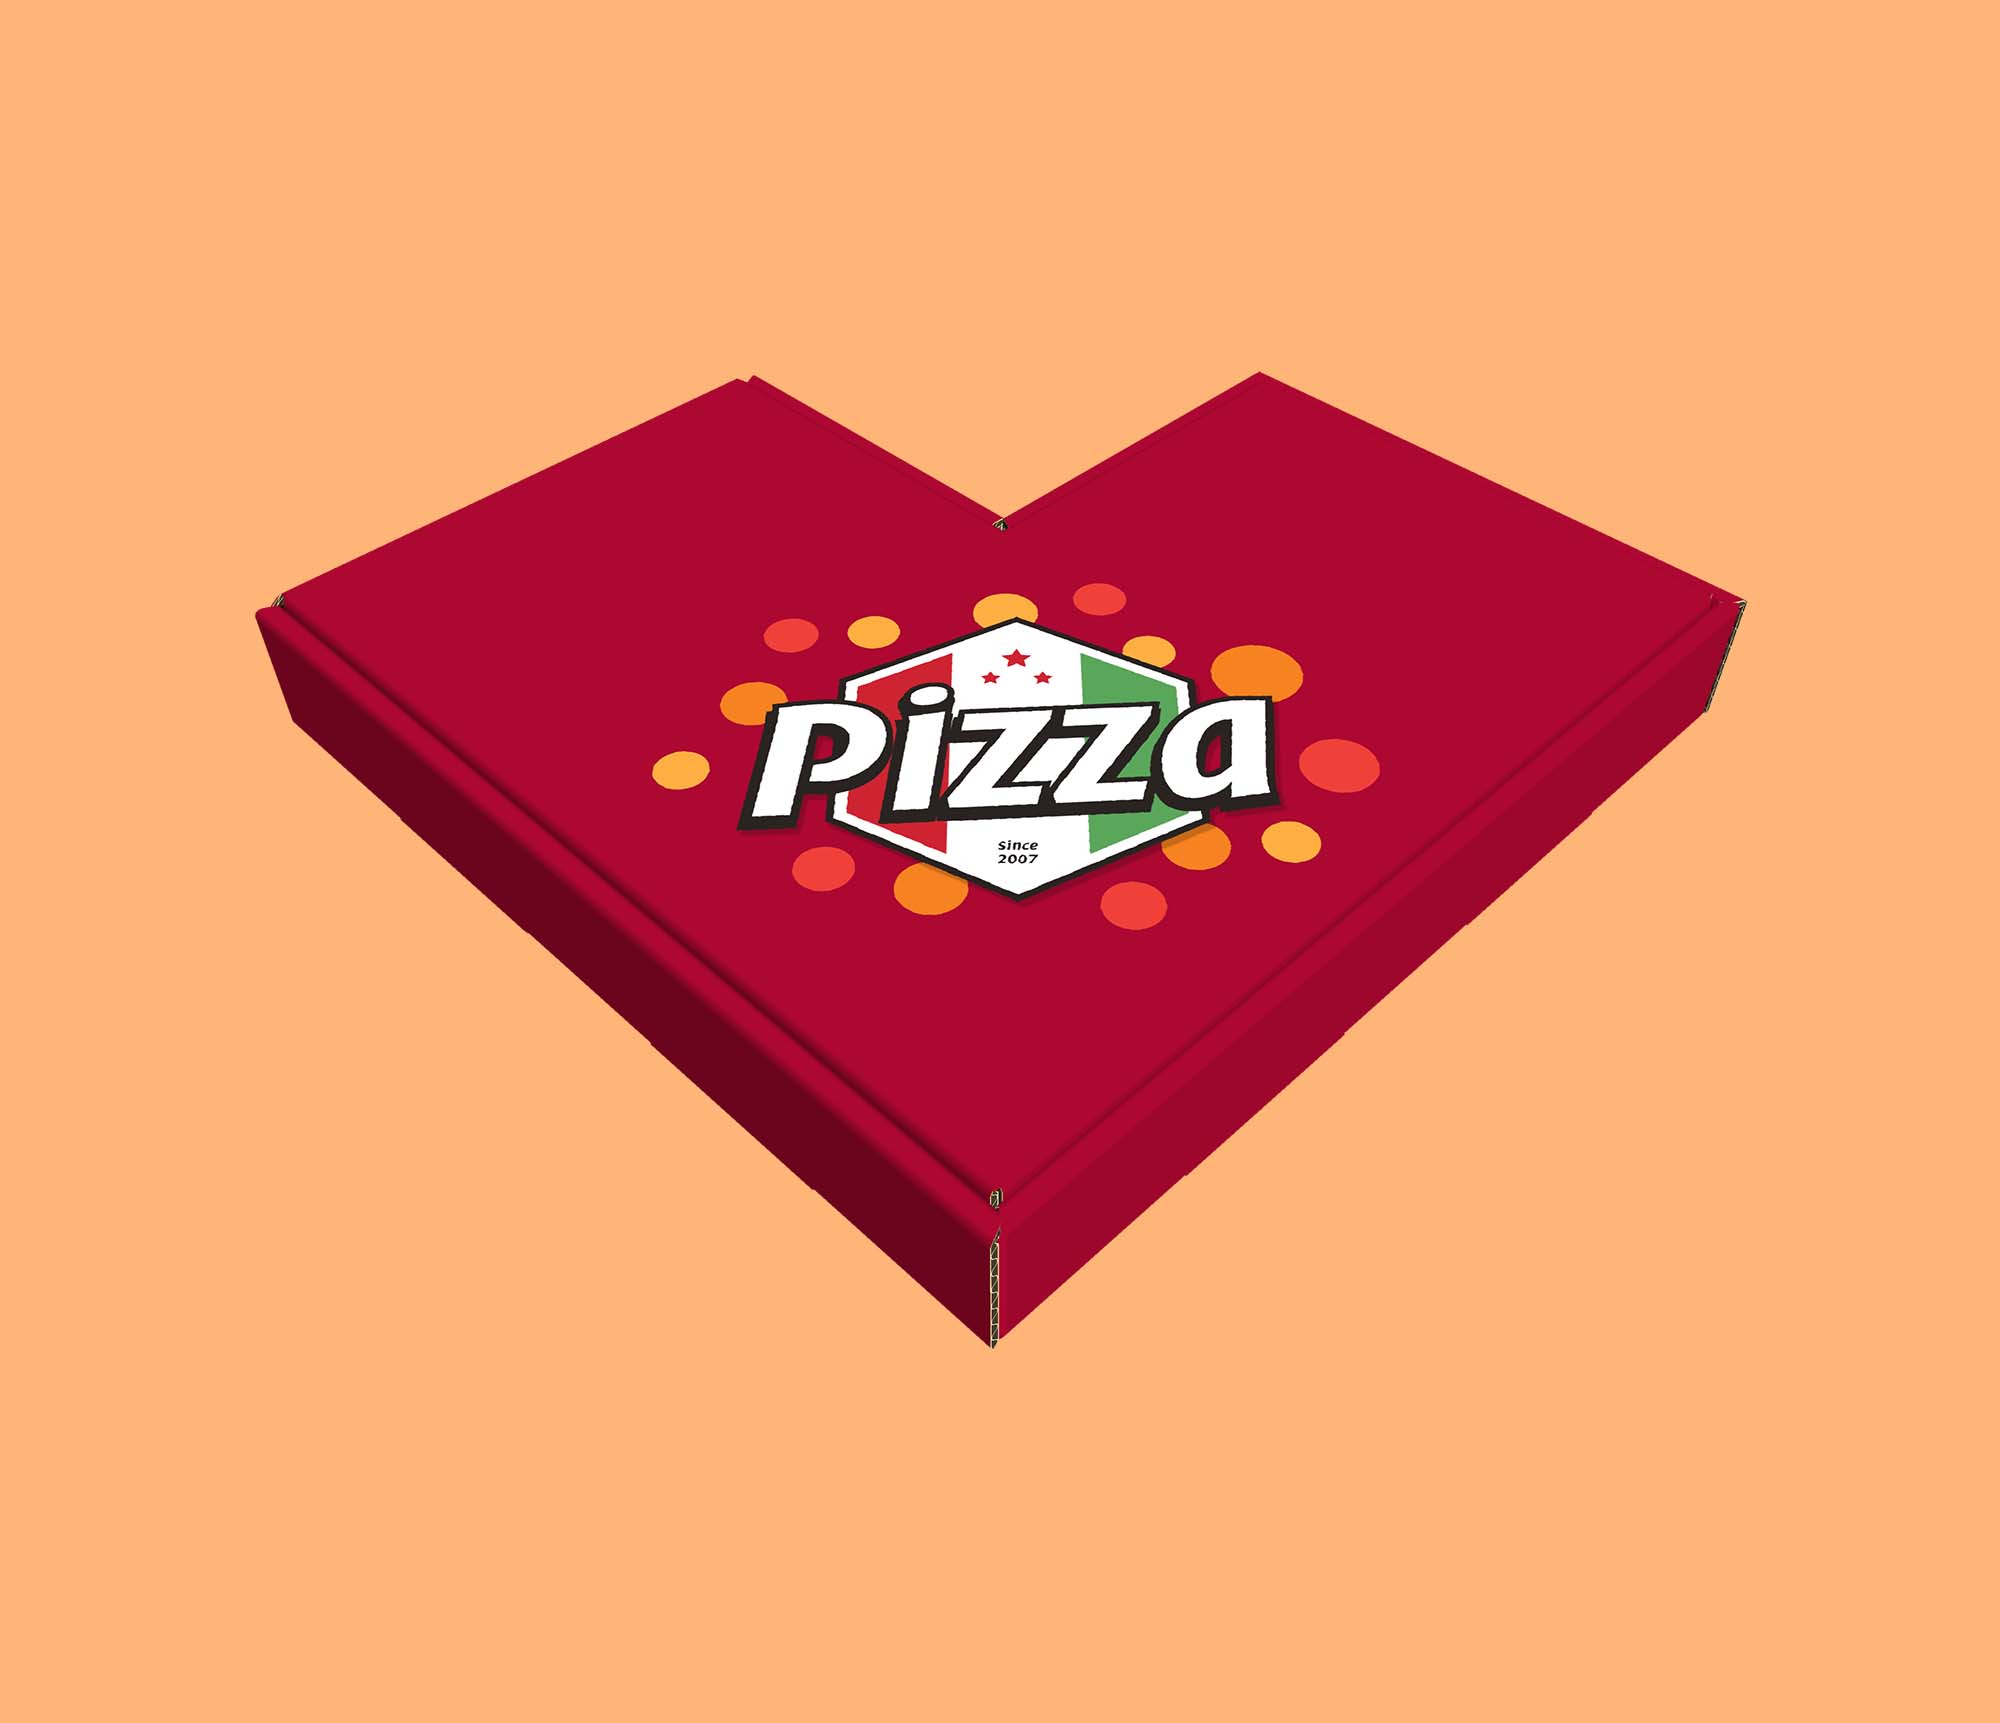 Unique Shaped Pizza Boxes 